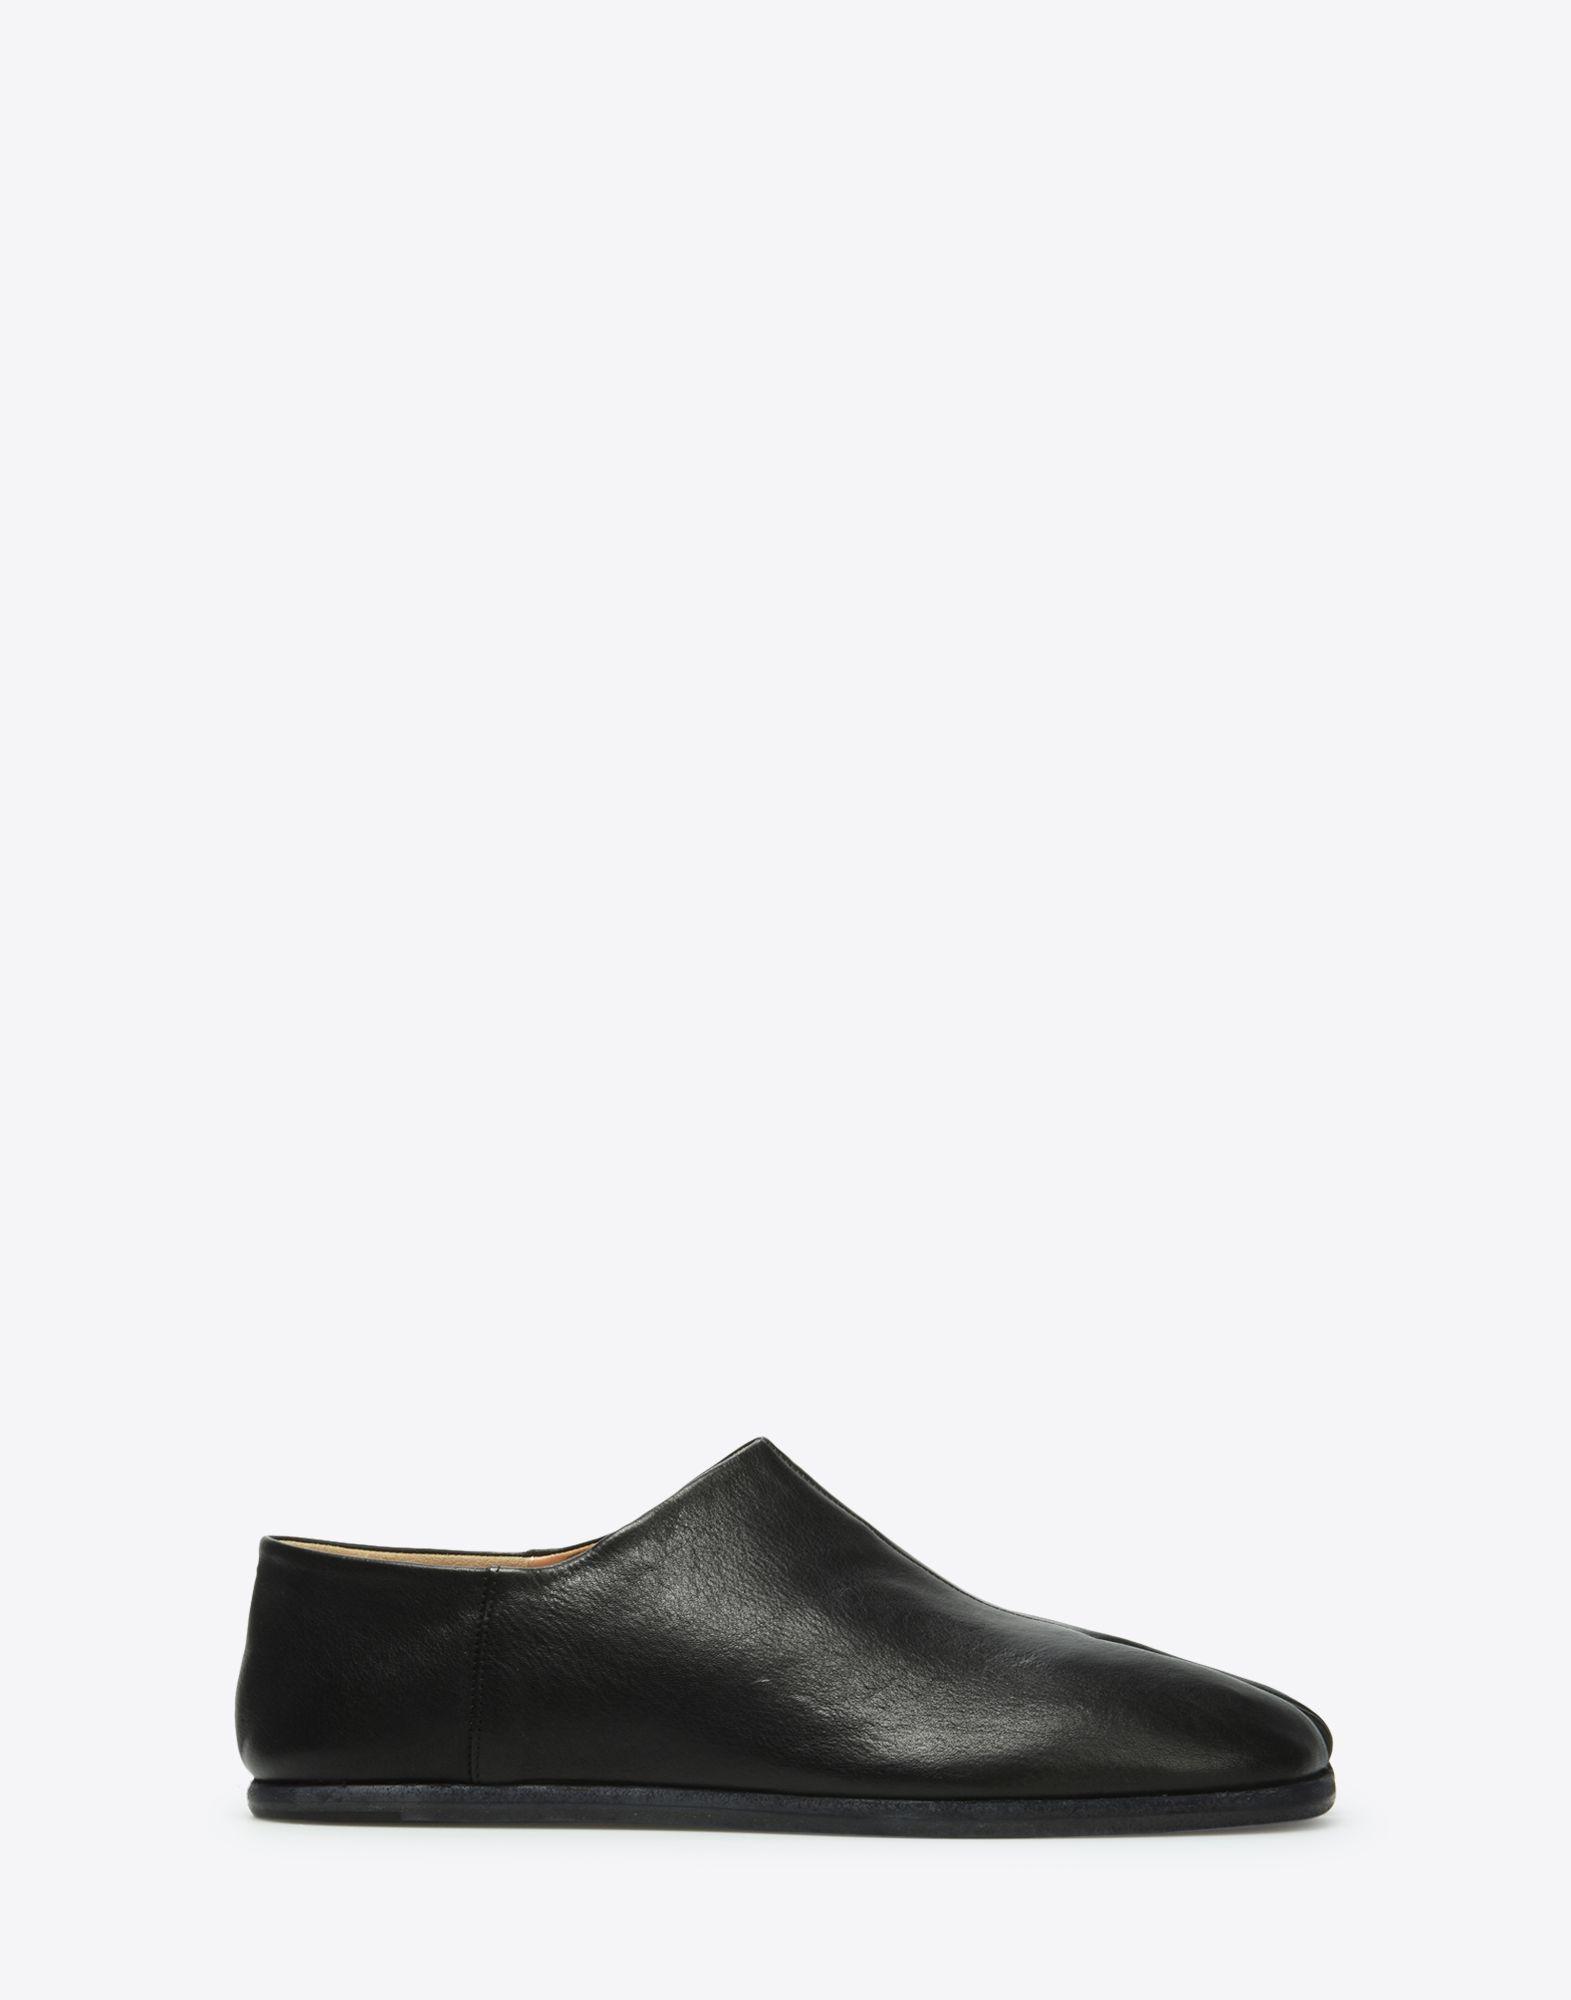 Lyst - Maison Margiela Slip-on Tabi Shoes in Black for Men